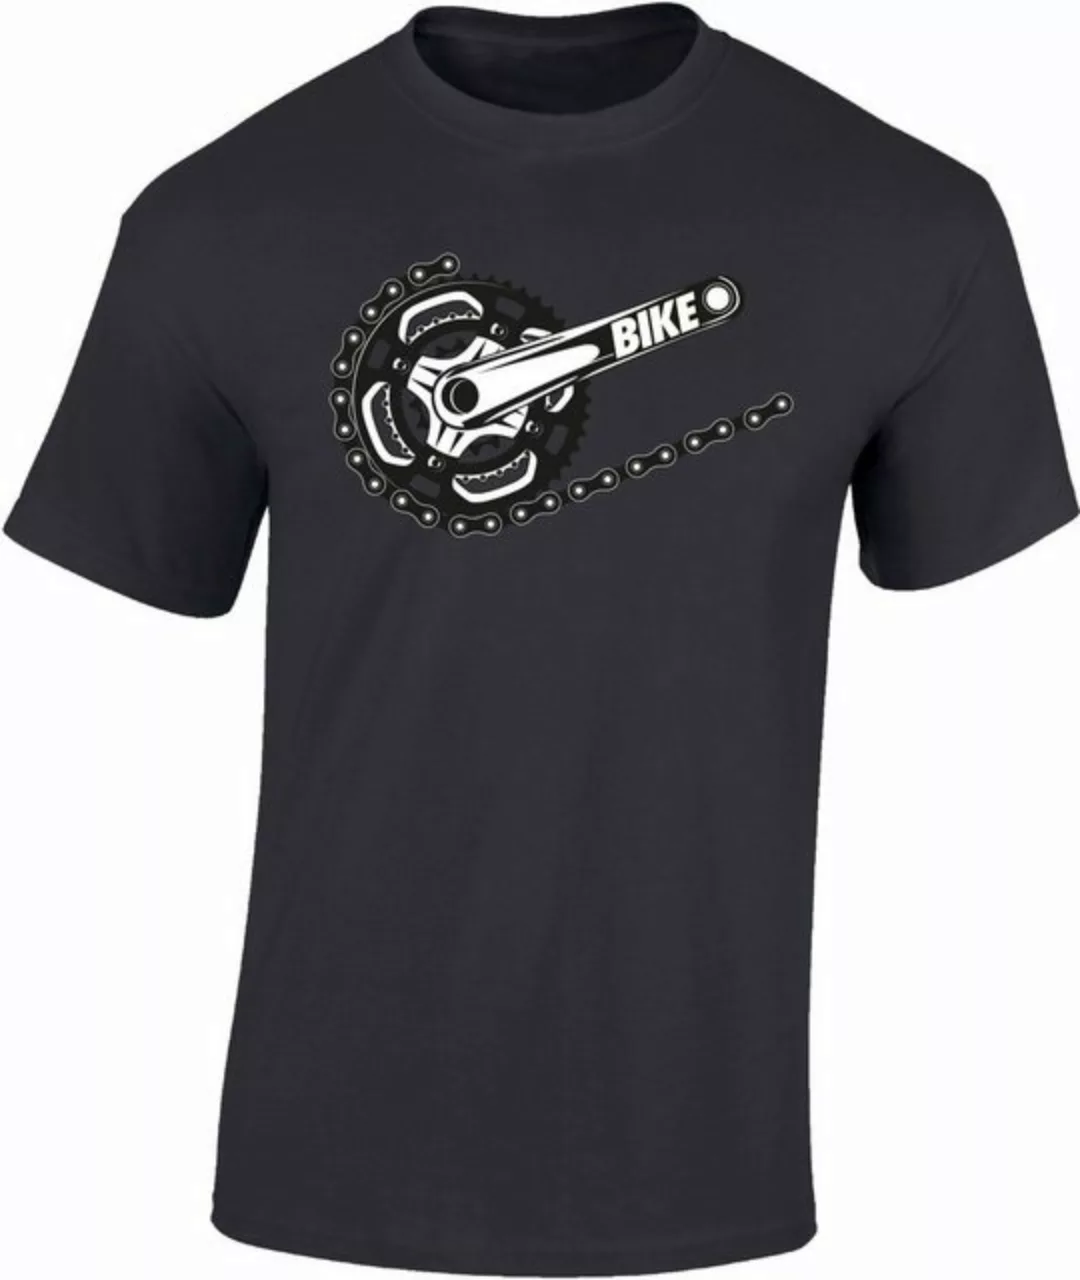 Baddery Print-Shirt Fahrrad T-Shirt : "Bike" - Mountainbike Shirt, hochwert günstig online kaufen